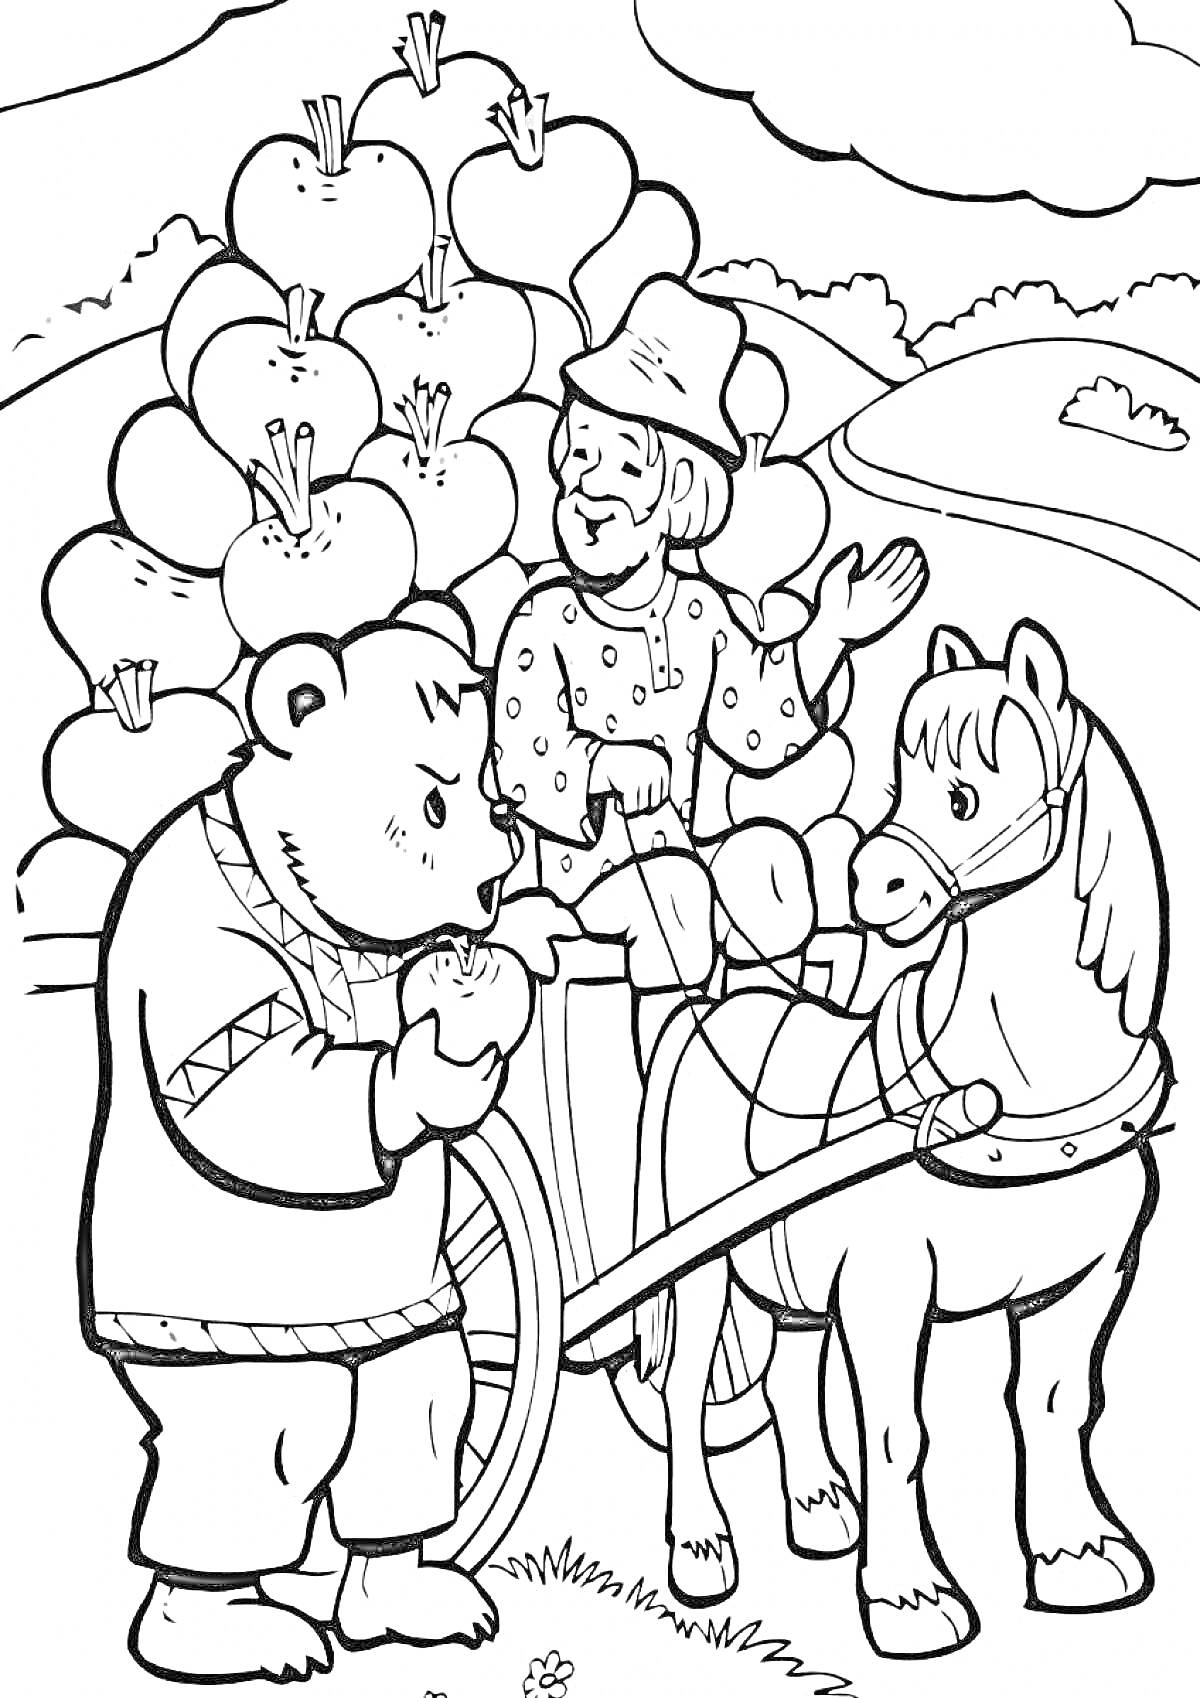 Мужчина и медведь перед яблоней с яблоками и конем в упряжке